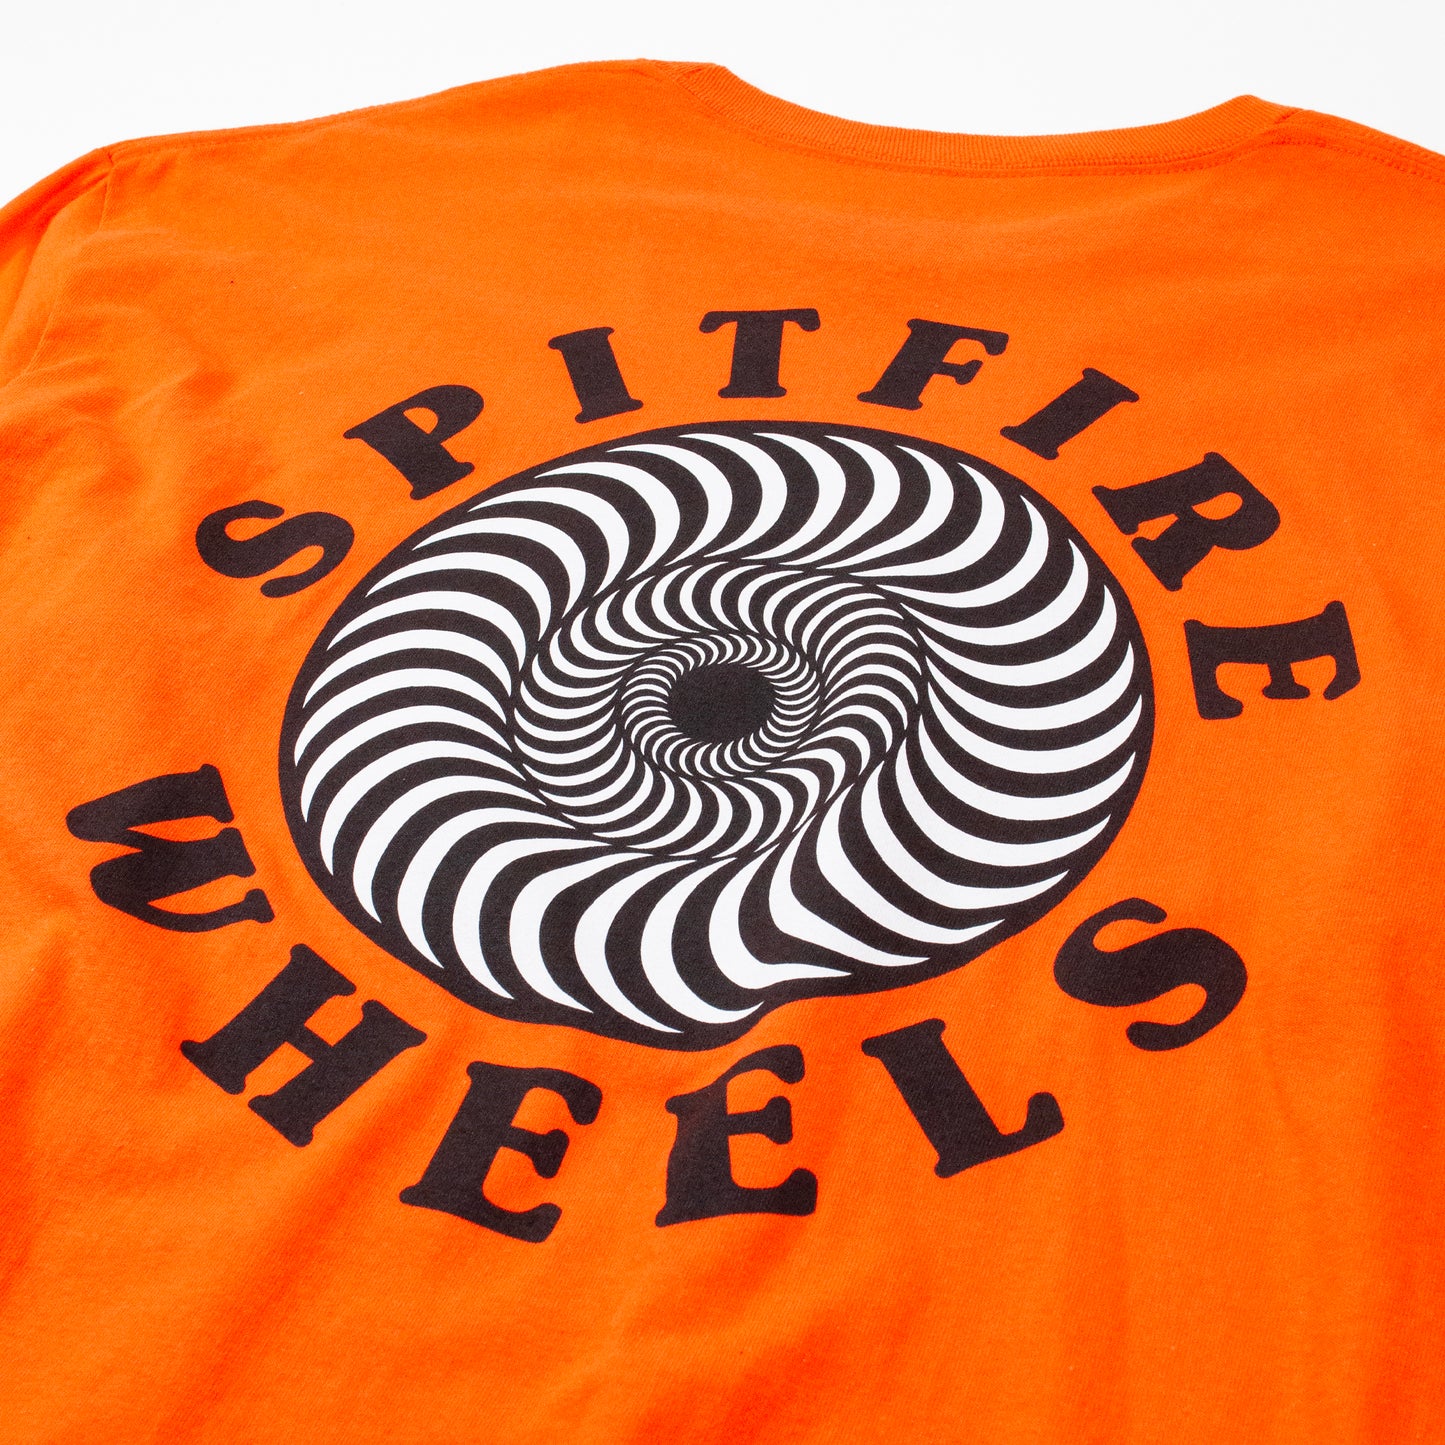 Spitfire OG Classic Fill Long Sleeve T shirt - Orange/ Black/ White - Prime Delux Store